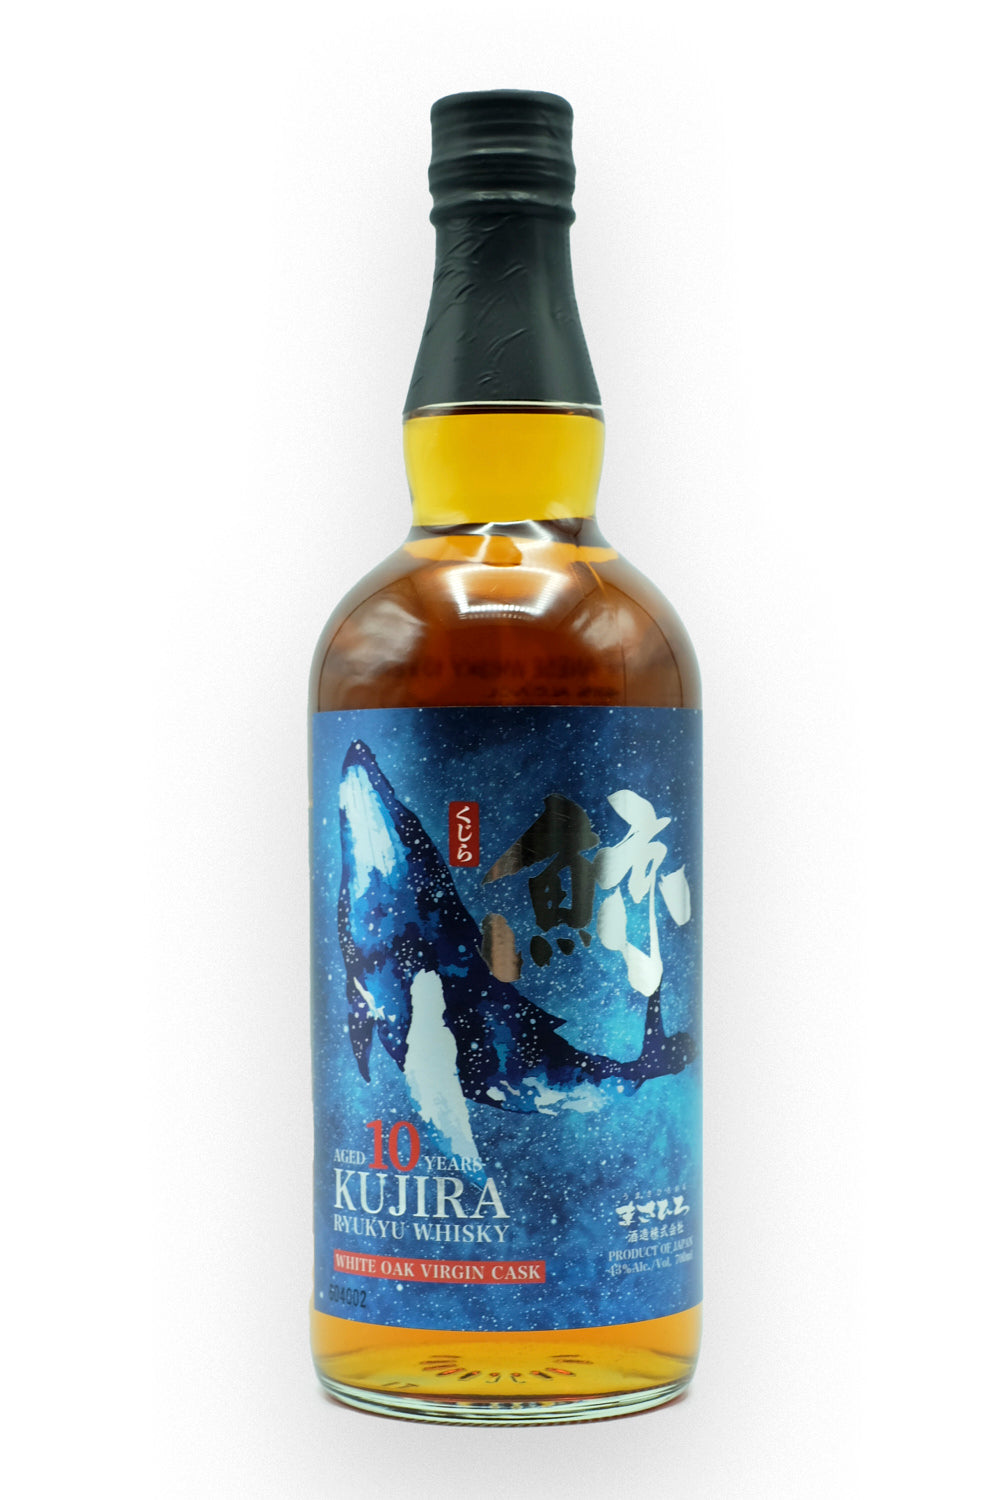 Kujira 10 Year Single Grain Whisky